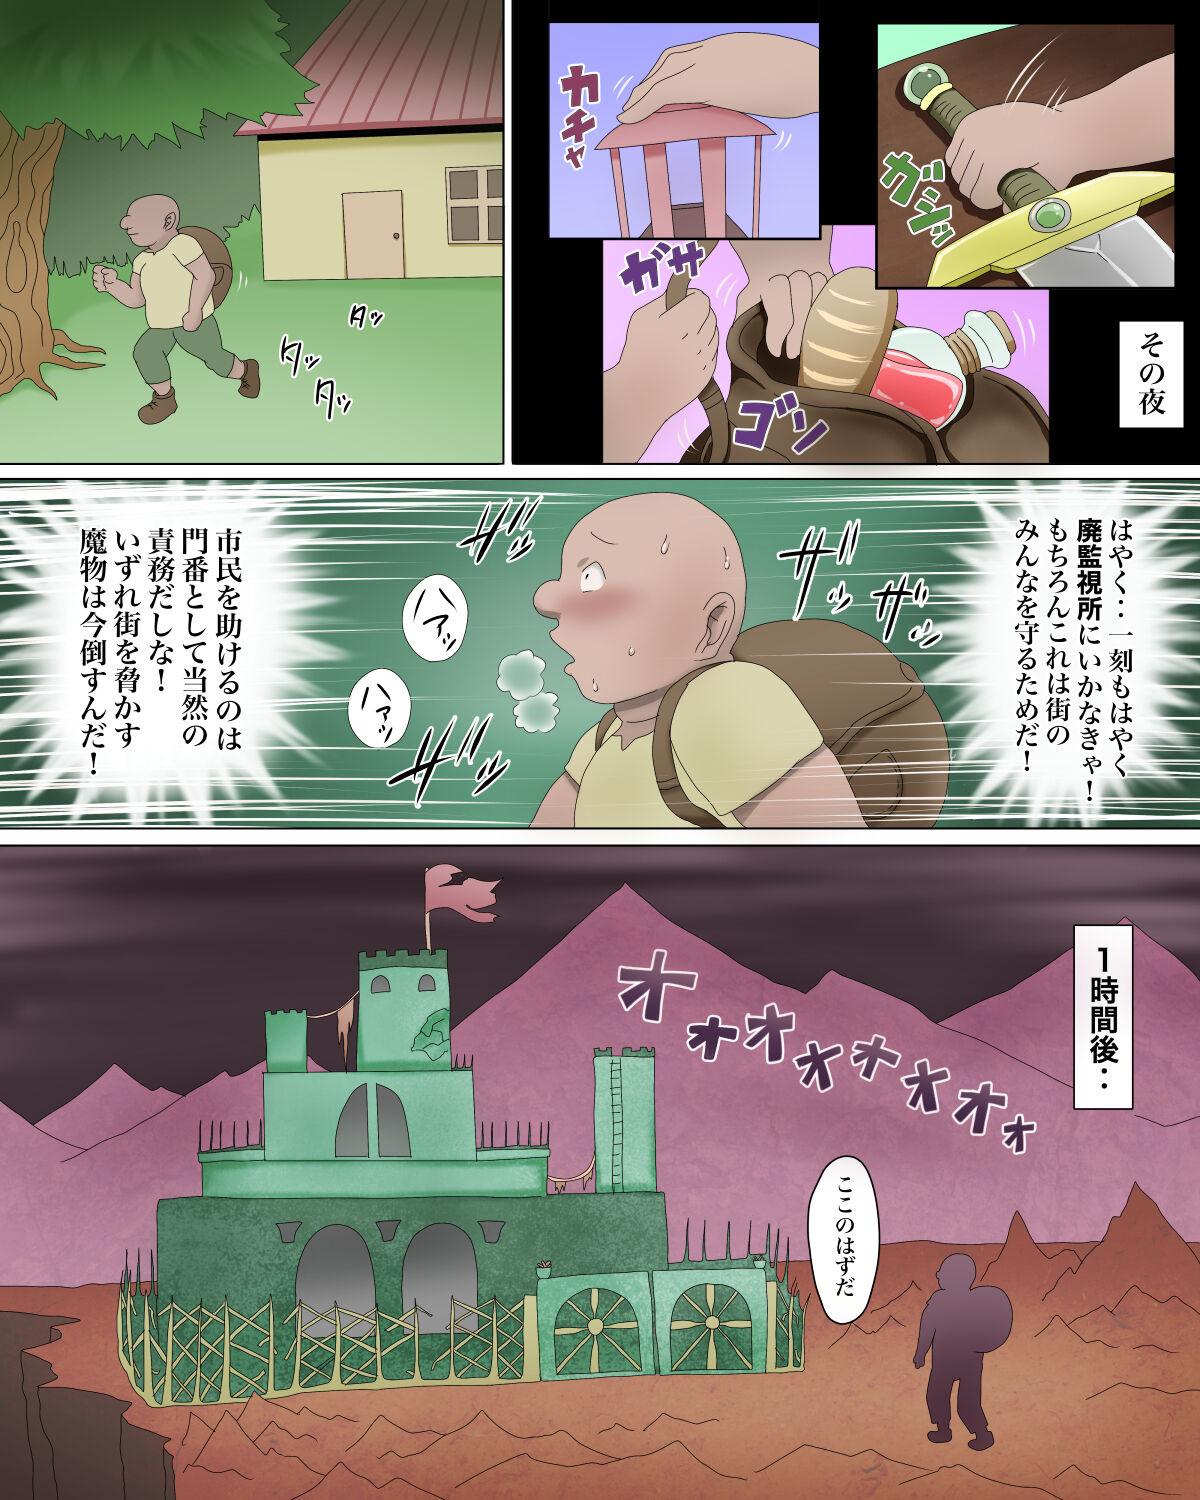 Humiliation Pov Lolicubas 〜 shojo in ma tachi ni sakutori sa re tsudzuke ta otoko no hanashi 〜 - Original Grandma - Page 5